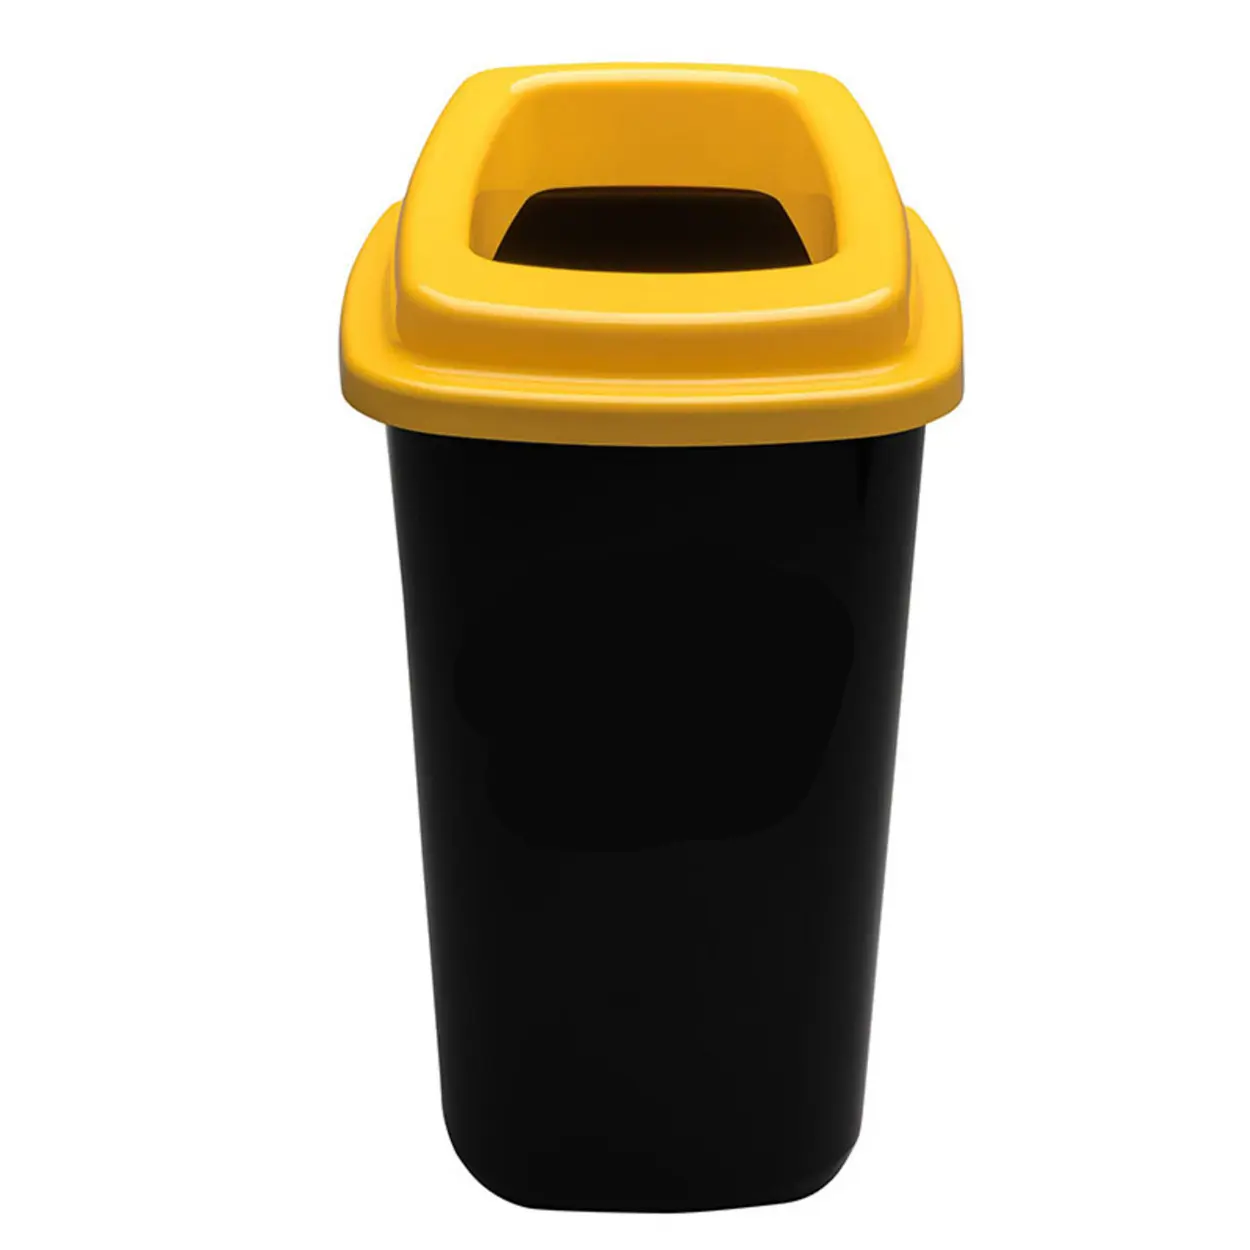 Plastový kôš na triedený odpad, 45 l, žltá